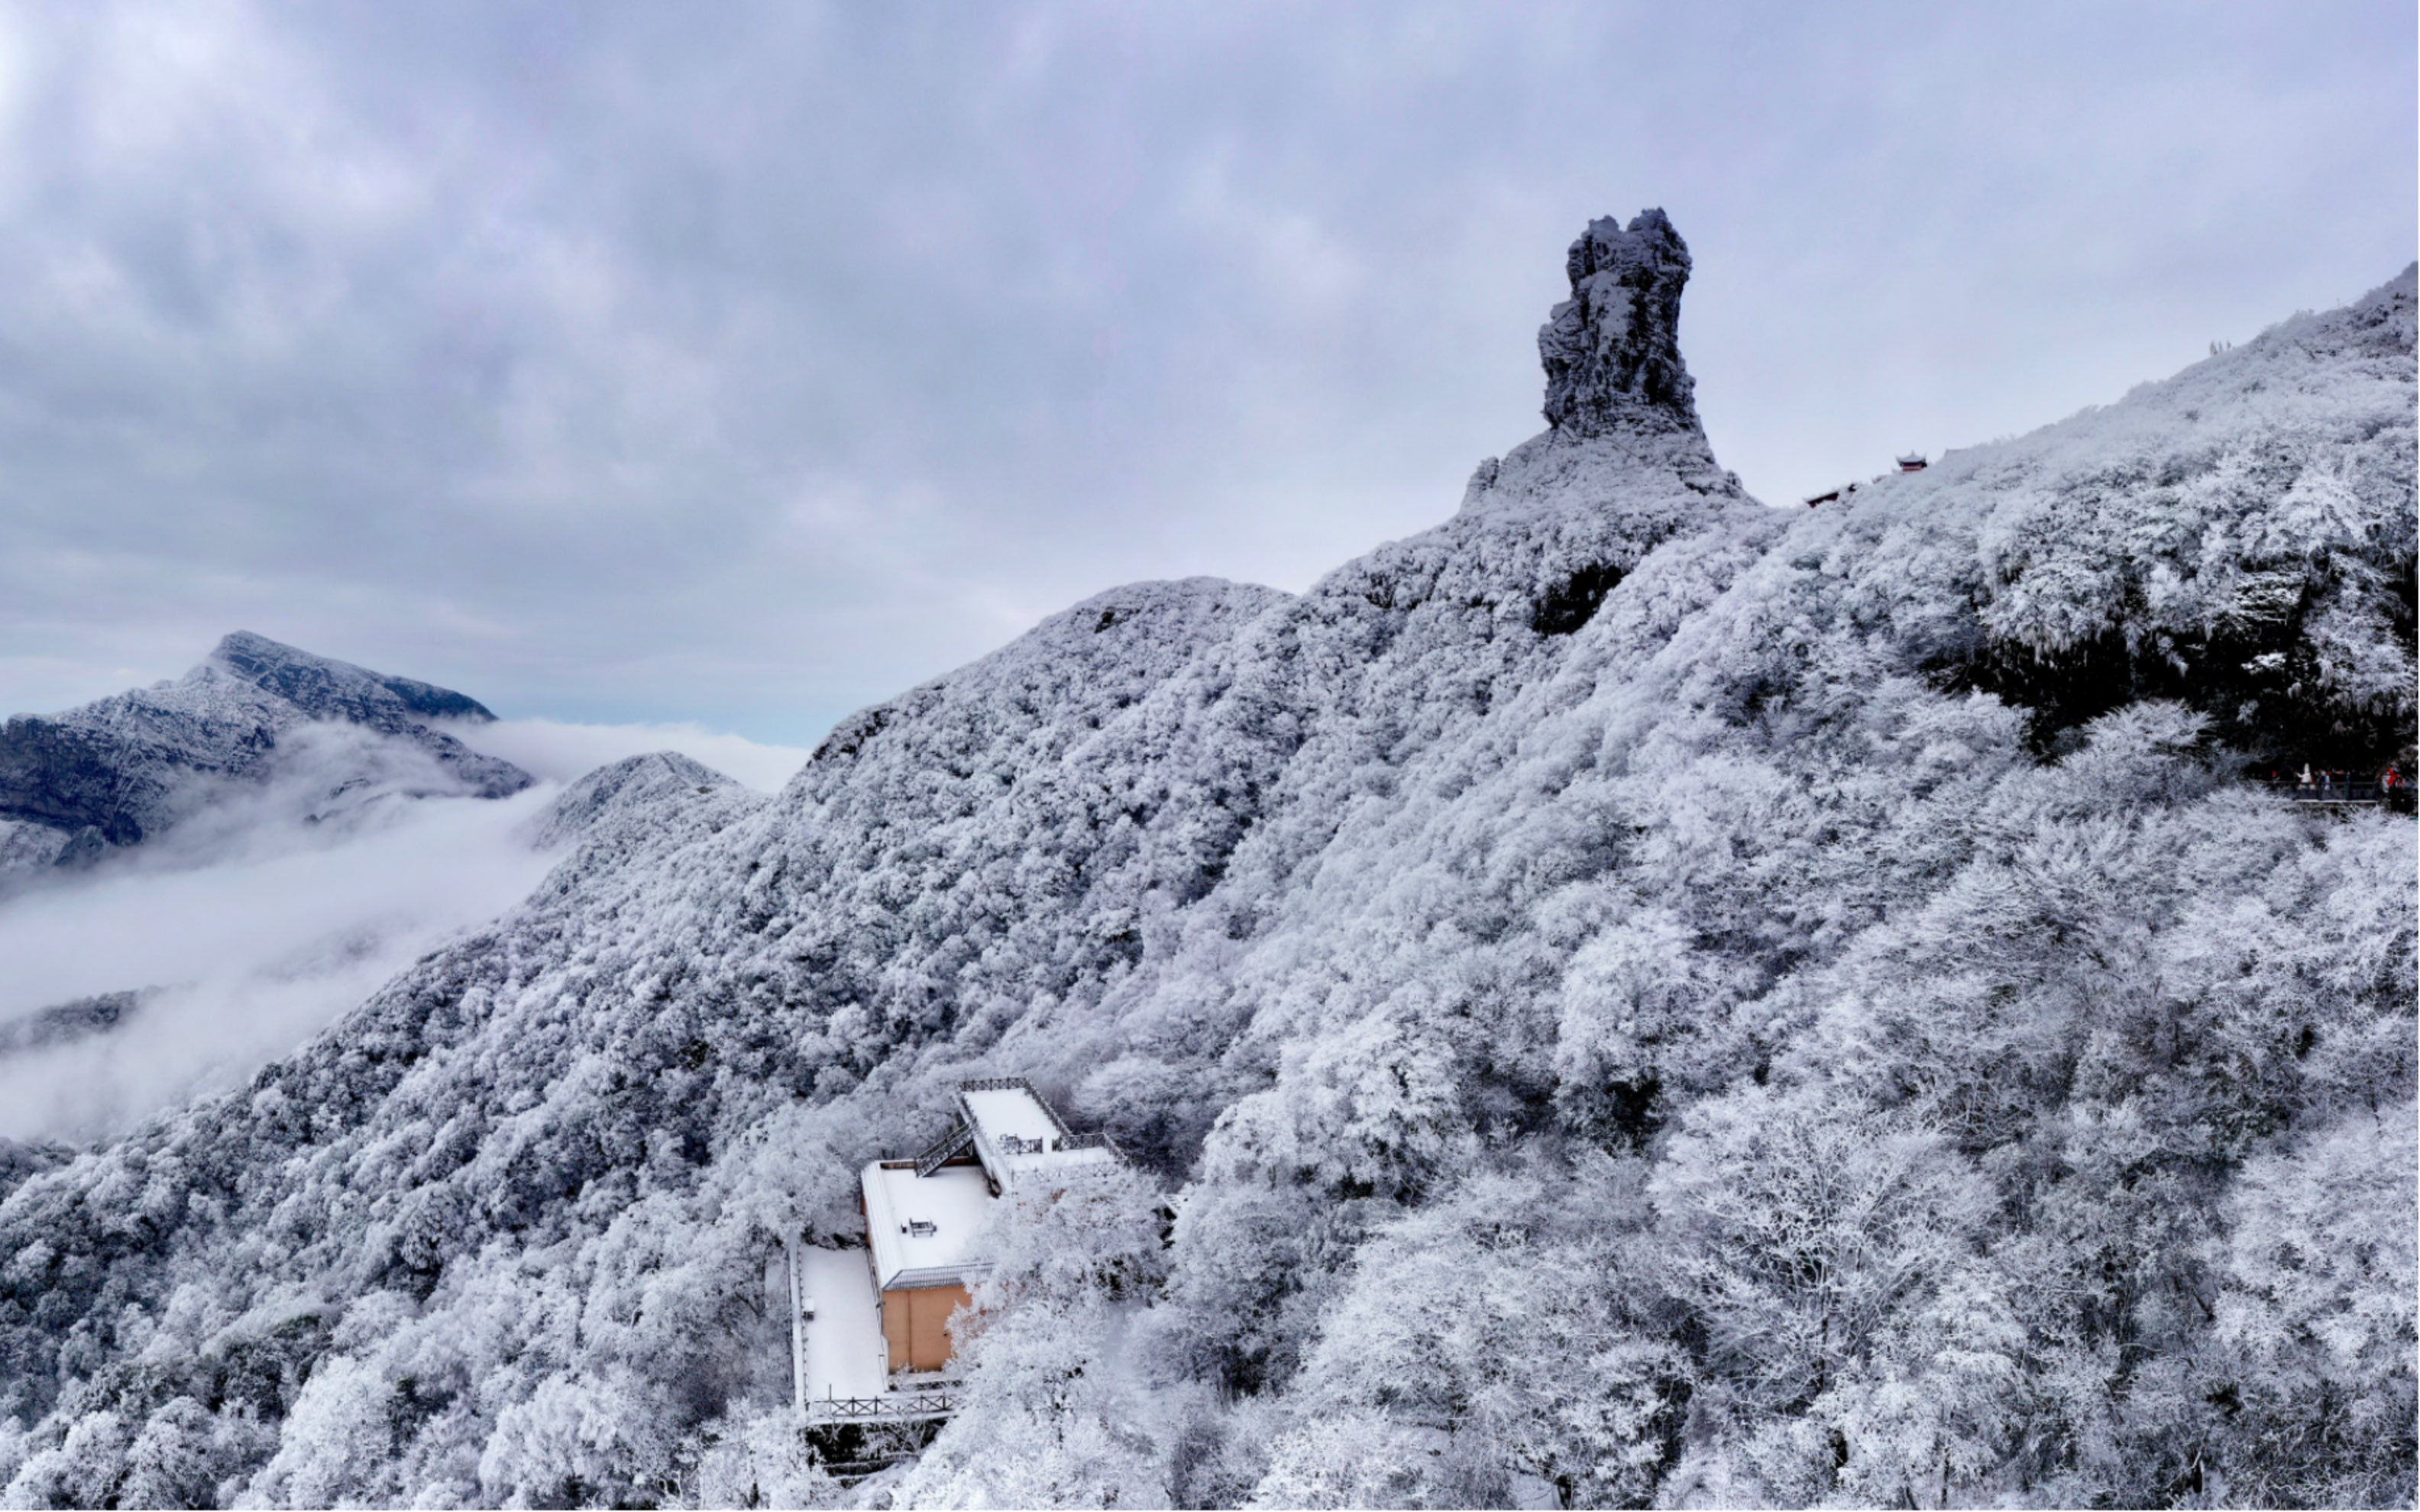 梵净山雪景图片图片